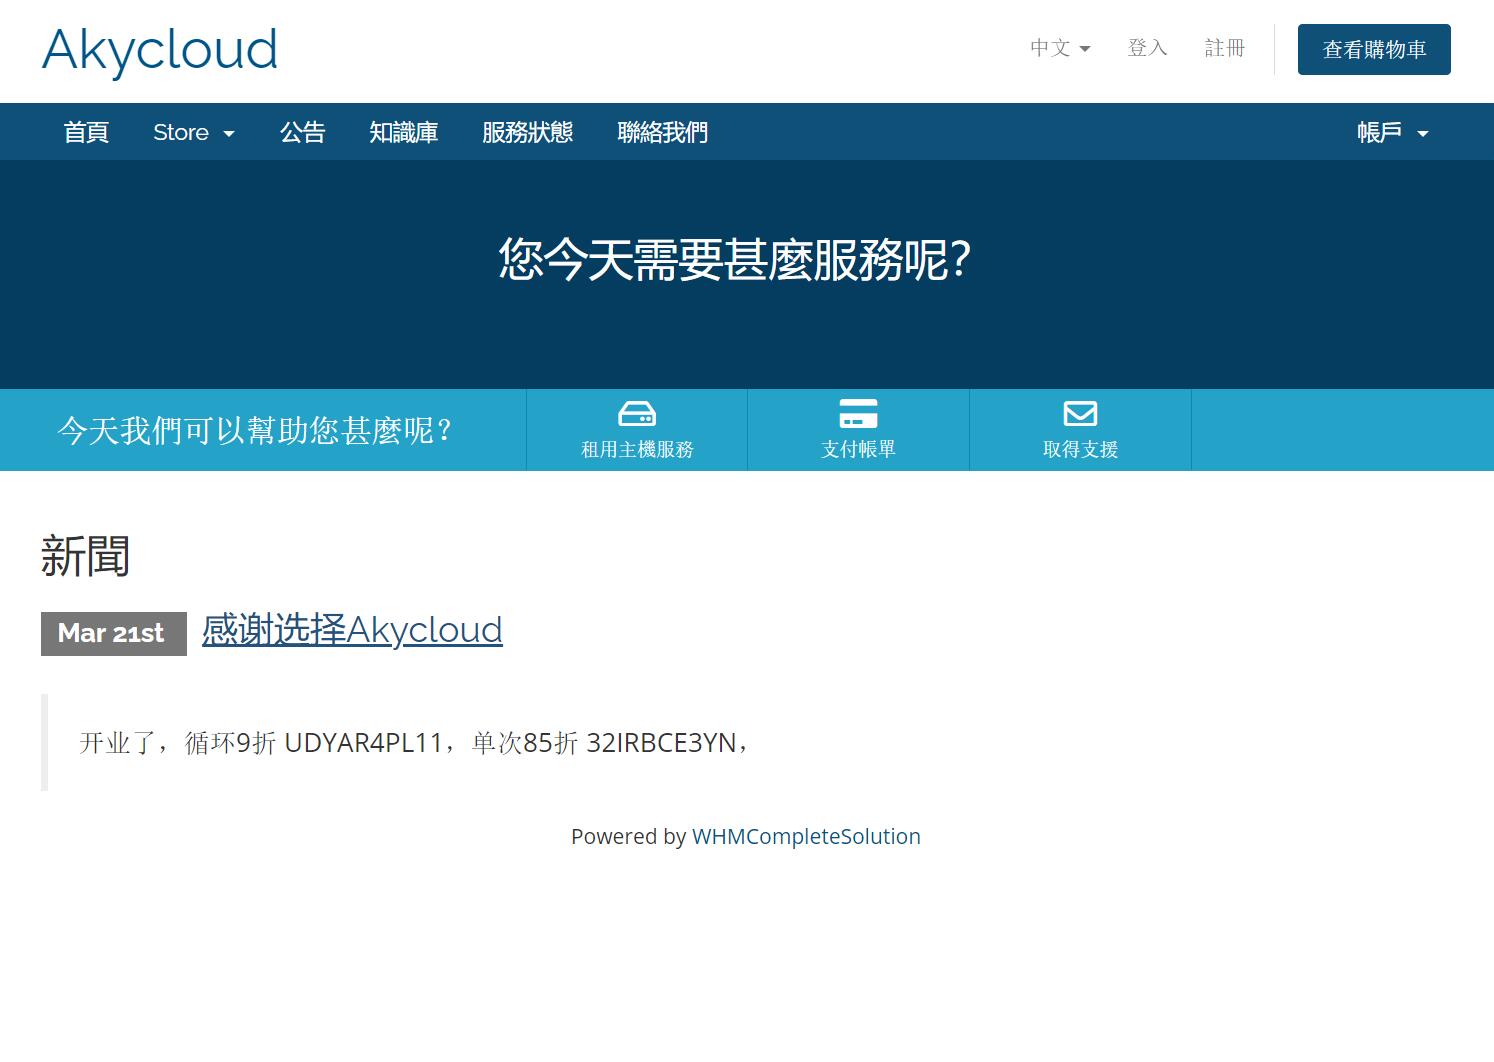 Akycloud：香港NAT/1核/512M内存/8G SSD/8T流量/1G带宽/KVM/月付$7.13/11端口/HKBN家宽/适合落地